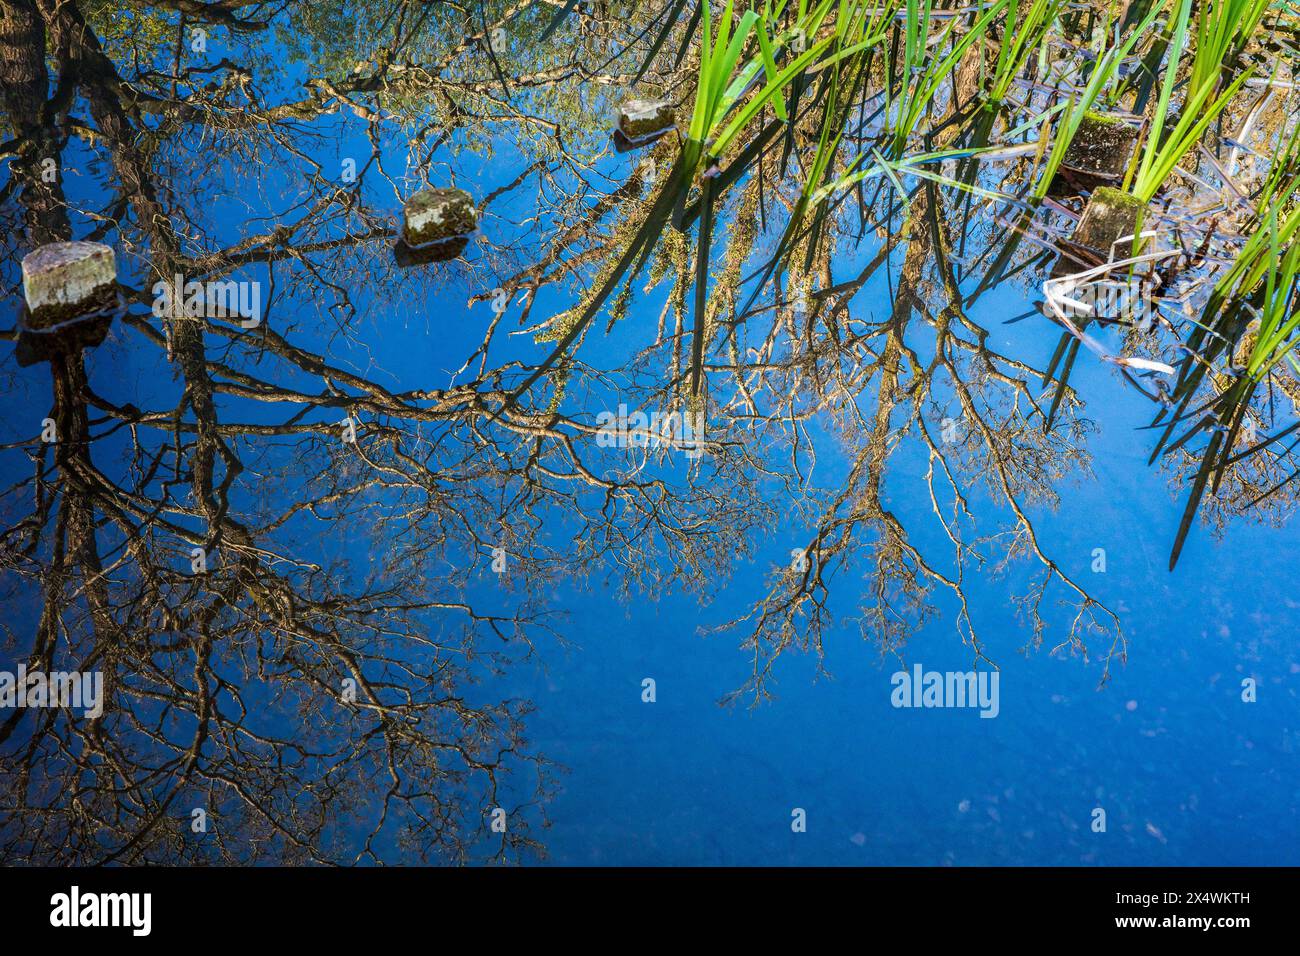 Reflet abstrait de branches et de roseaux à l'envers dans un lit d'étang. Abstrait coloré. Concept. Pleine conscience. Banque D'Images